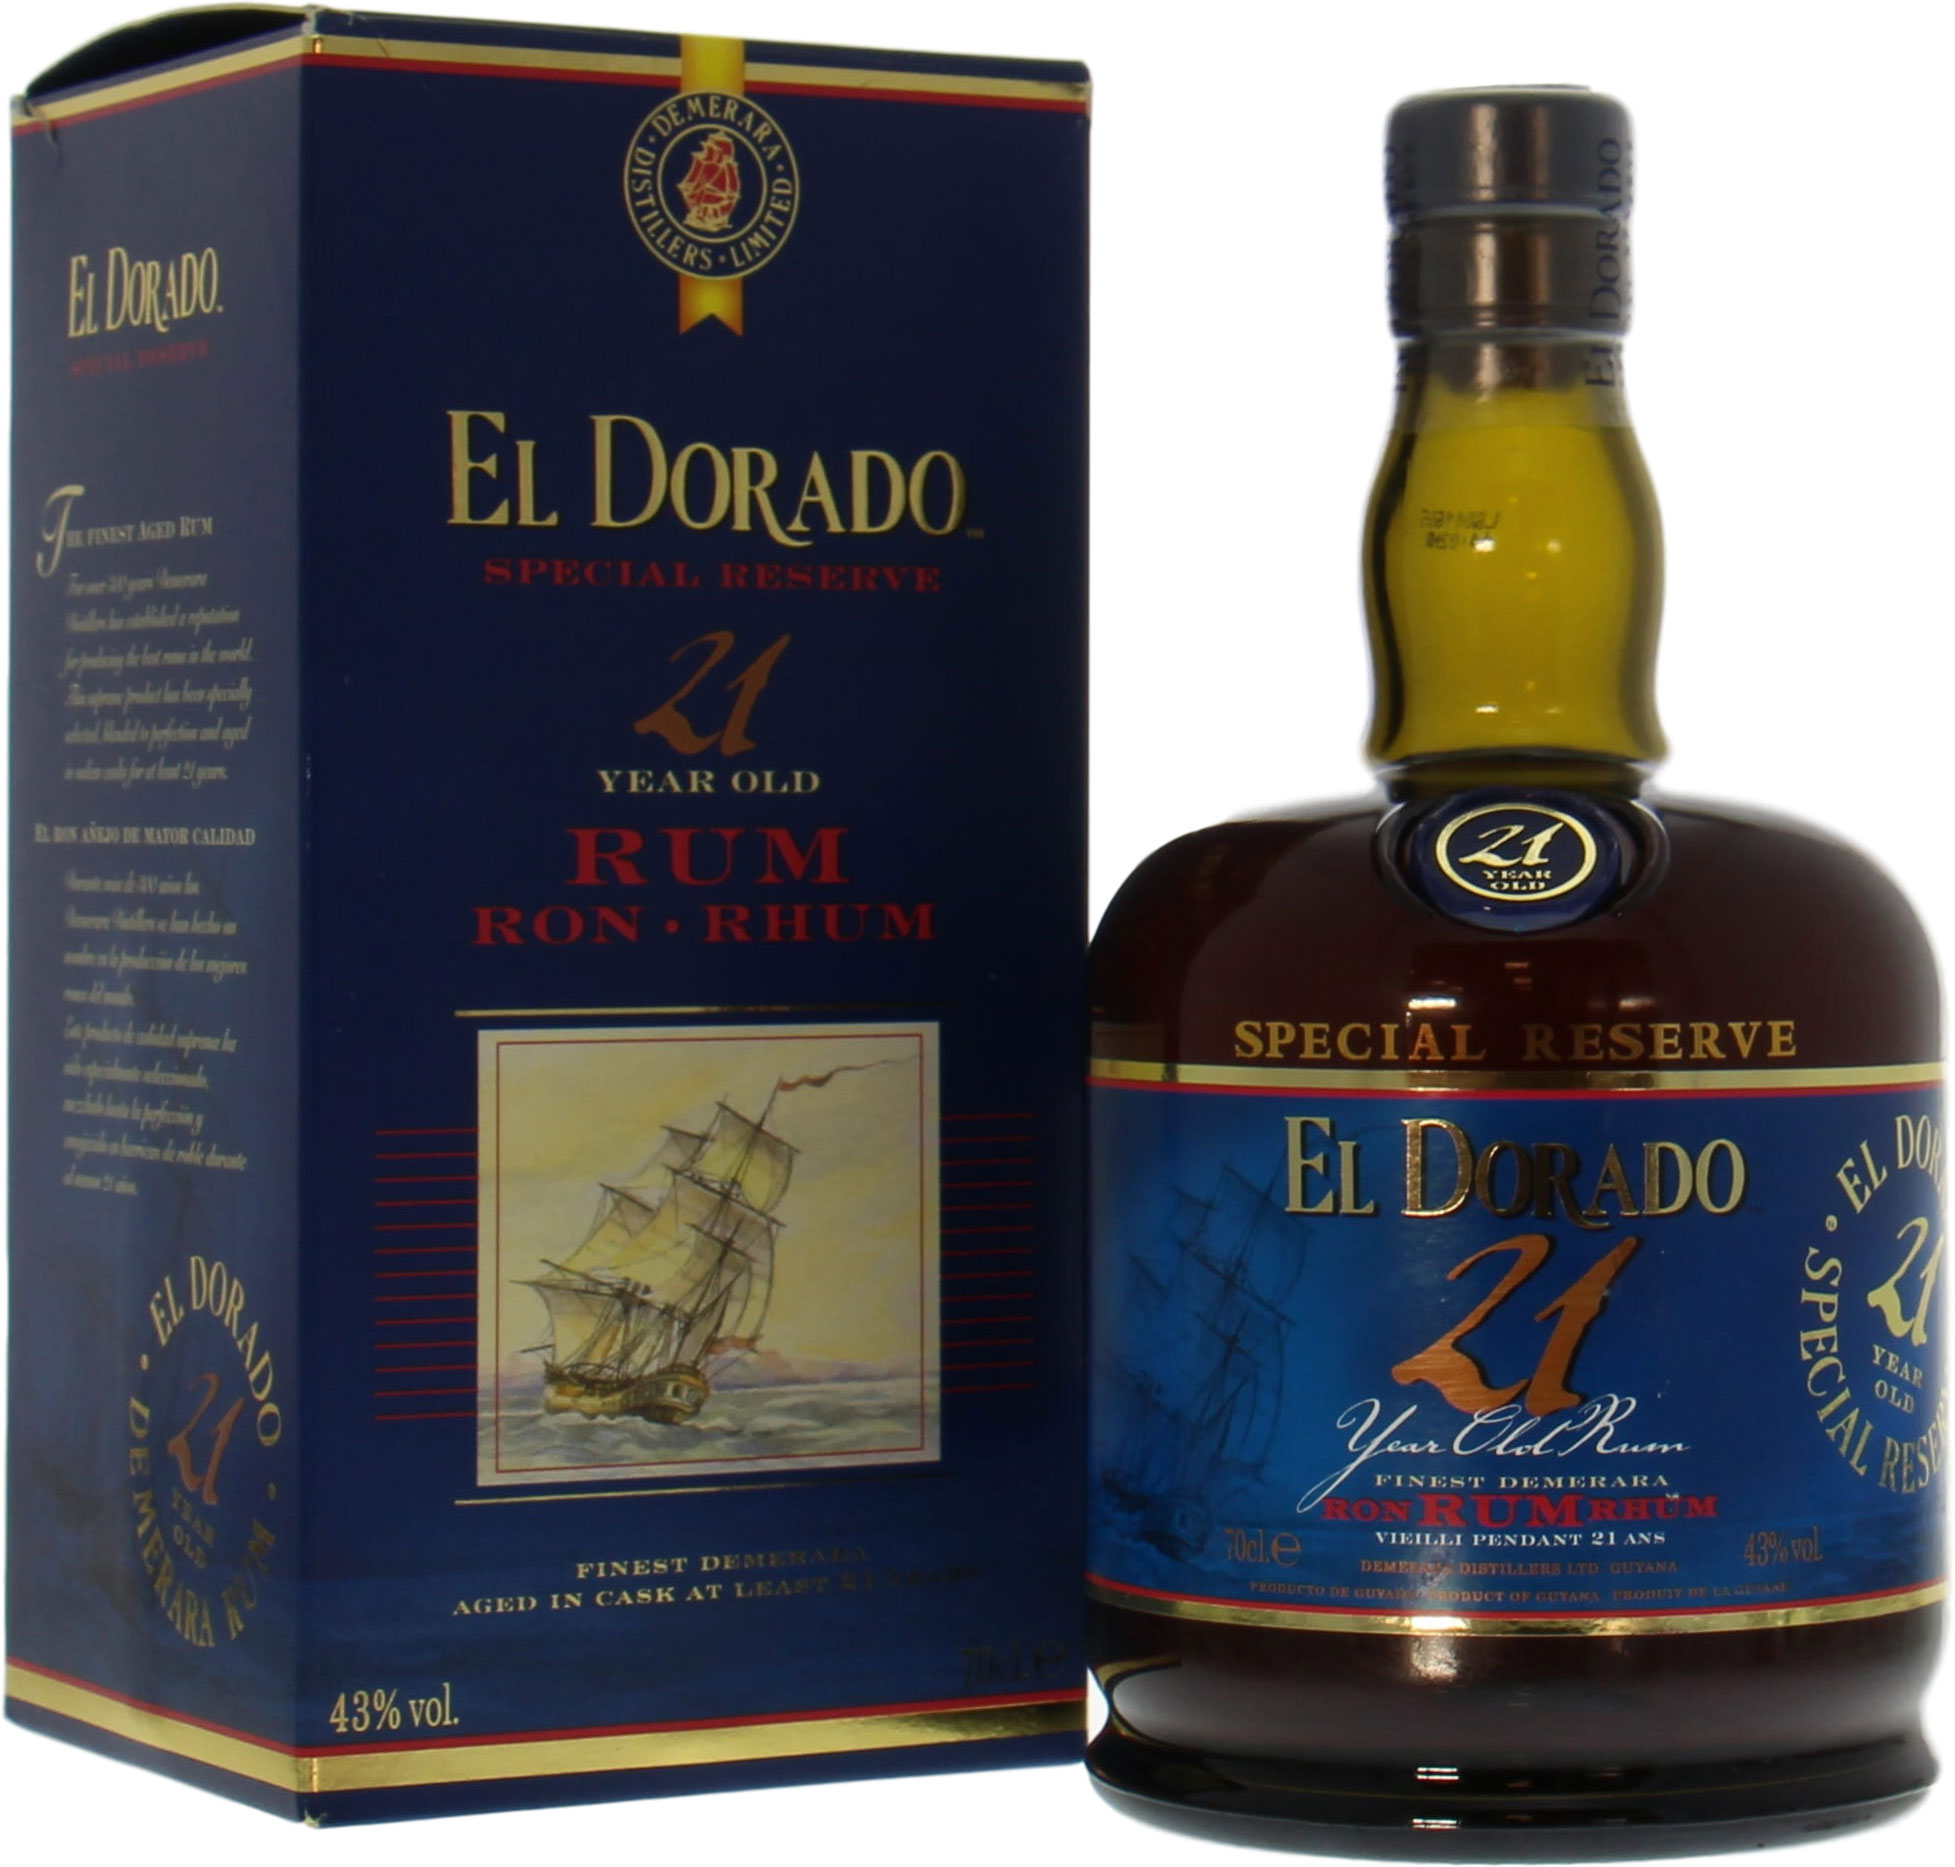 El Dorado - 21 years old rum 43% NV Perfect